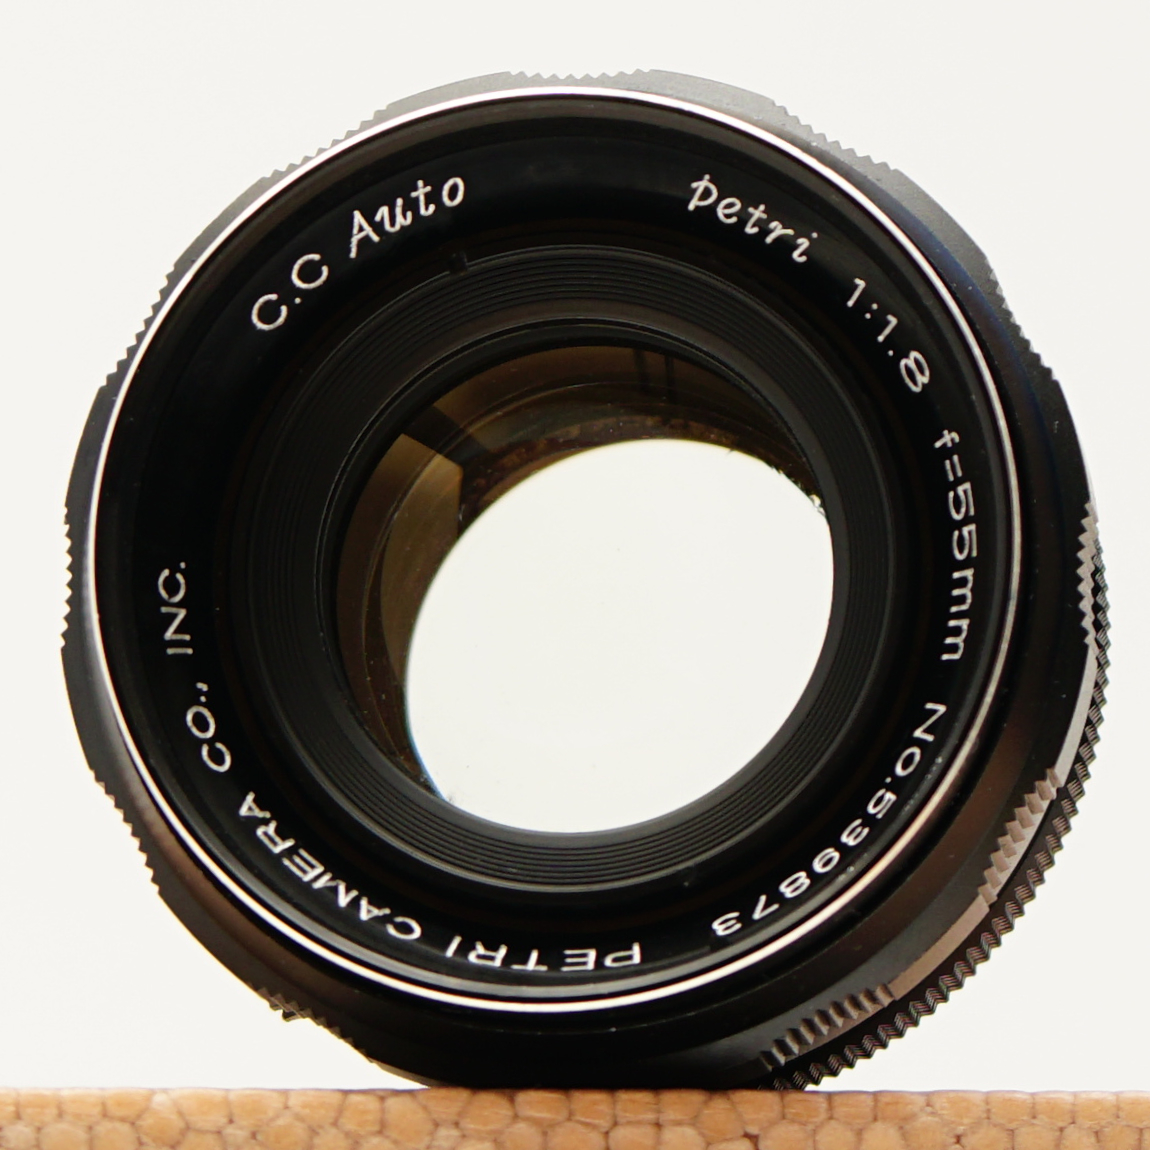 整備】PETRI C.C. Auto 55mm F1.8 (Serial No. 539873) - オールドレンズ・ヴィレッジ